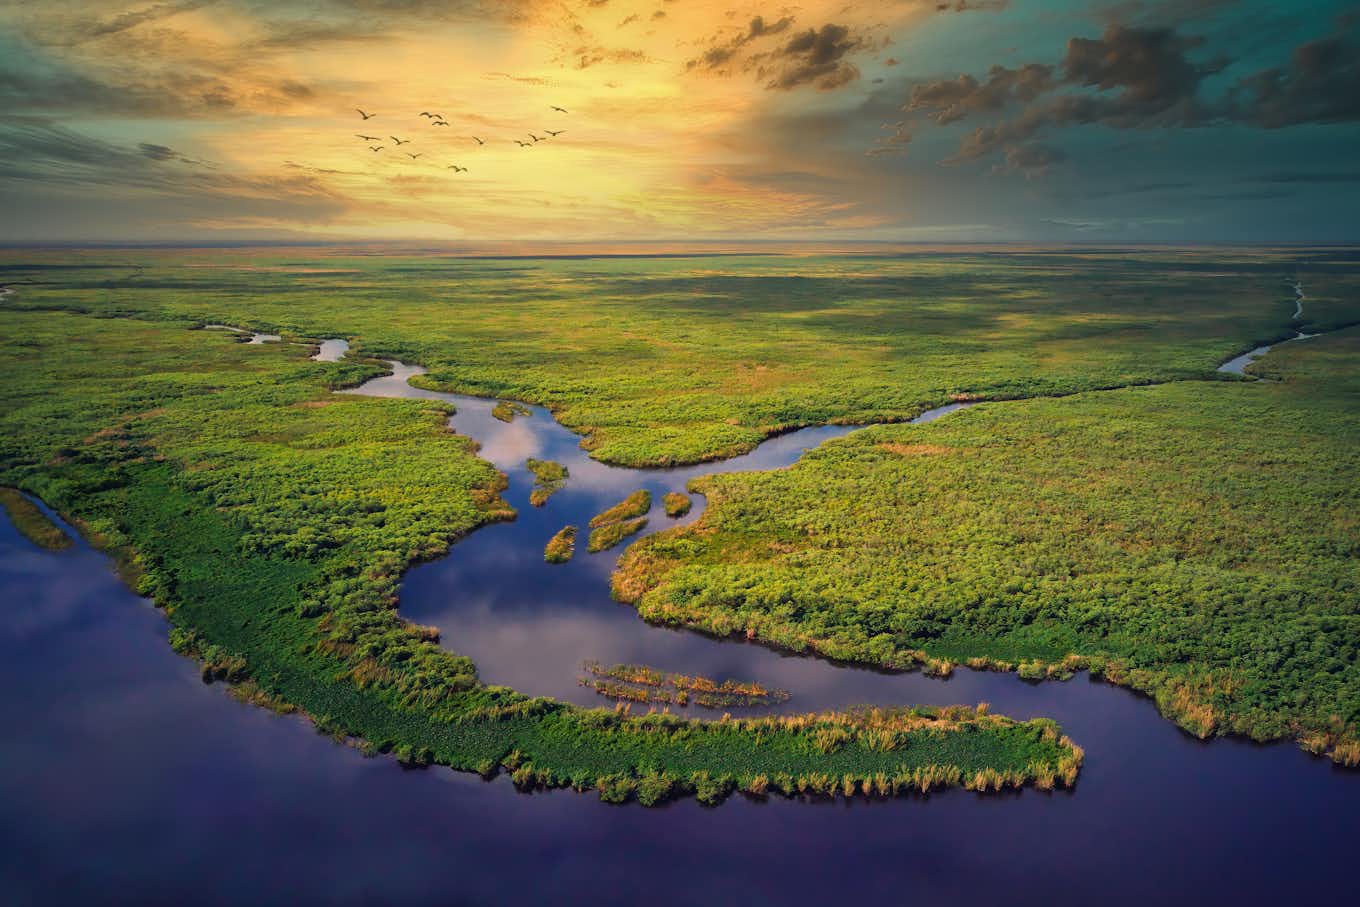 Everglades national park near Orlando